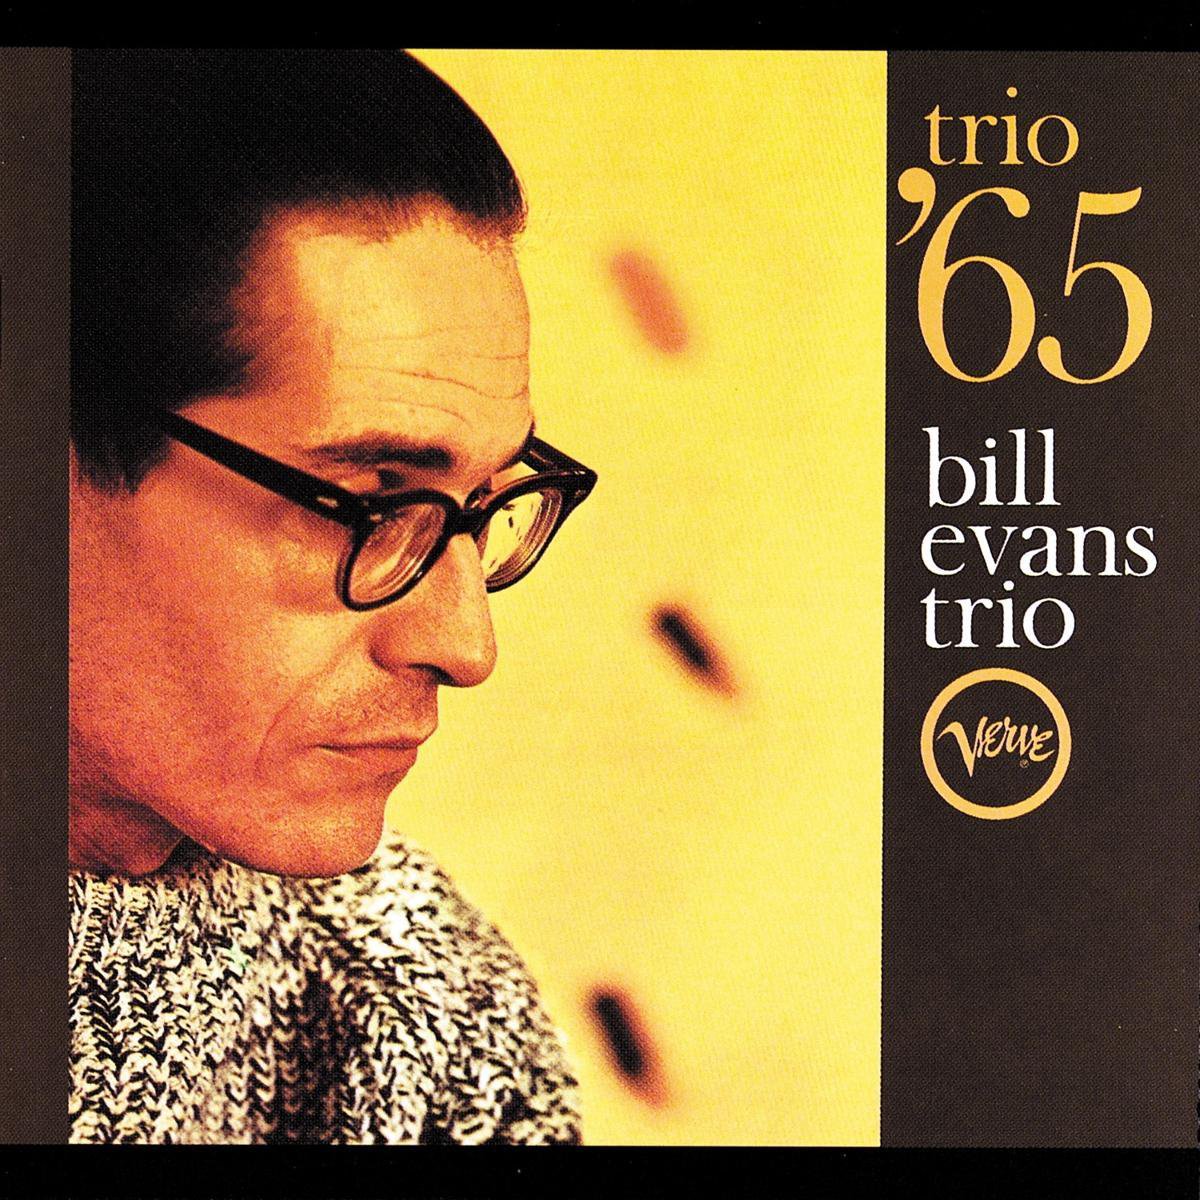 Bill Evans - Trio '65 (Verve - Acoustic Sounds Series)